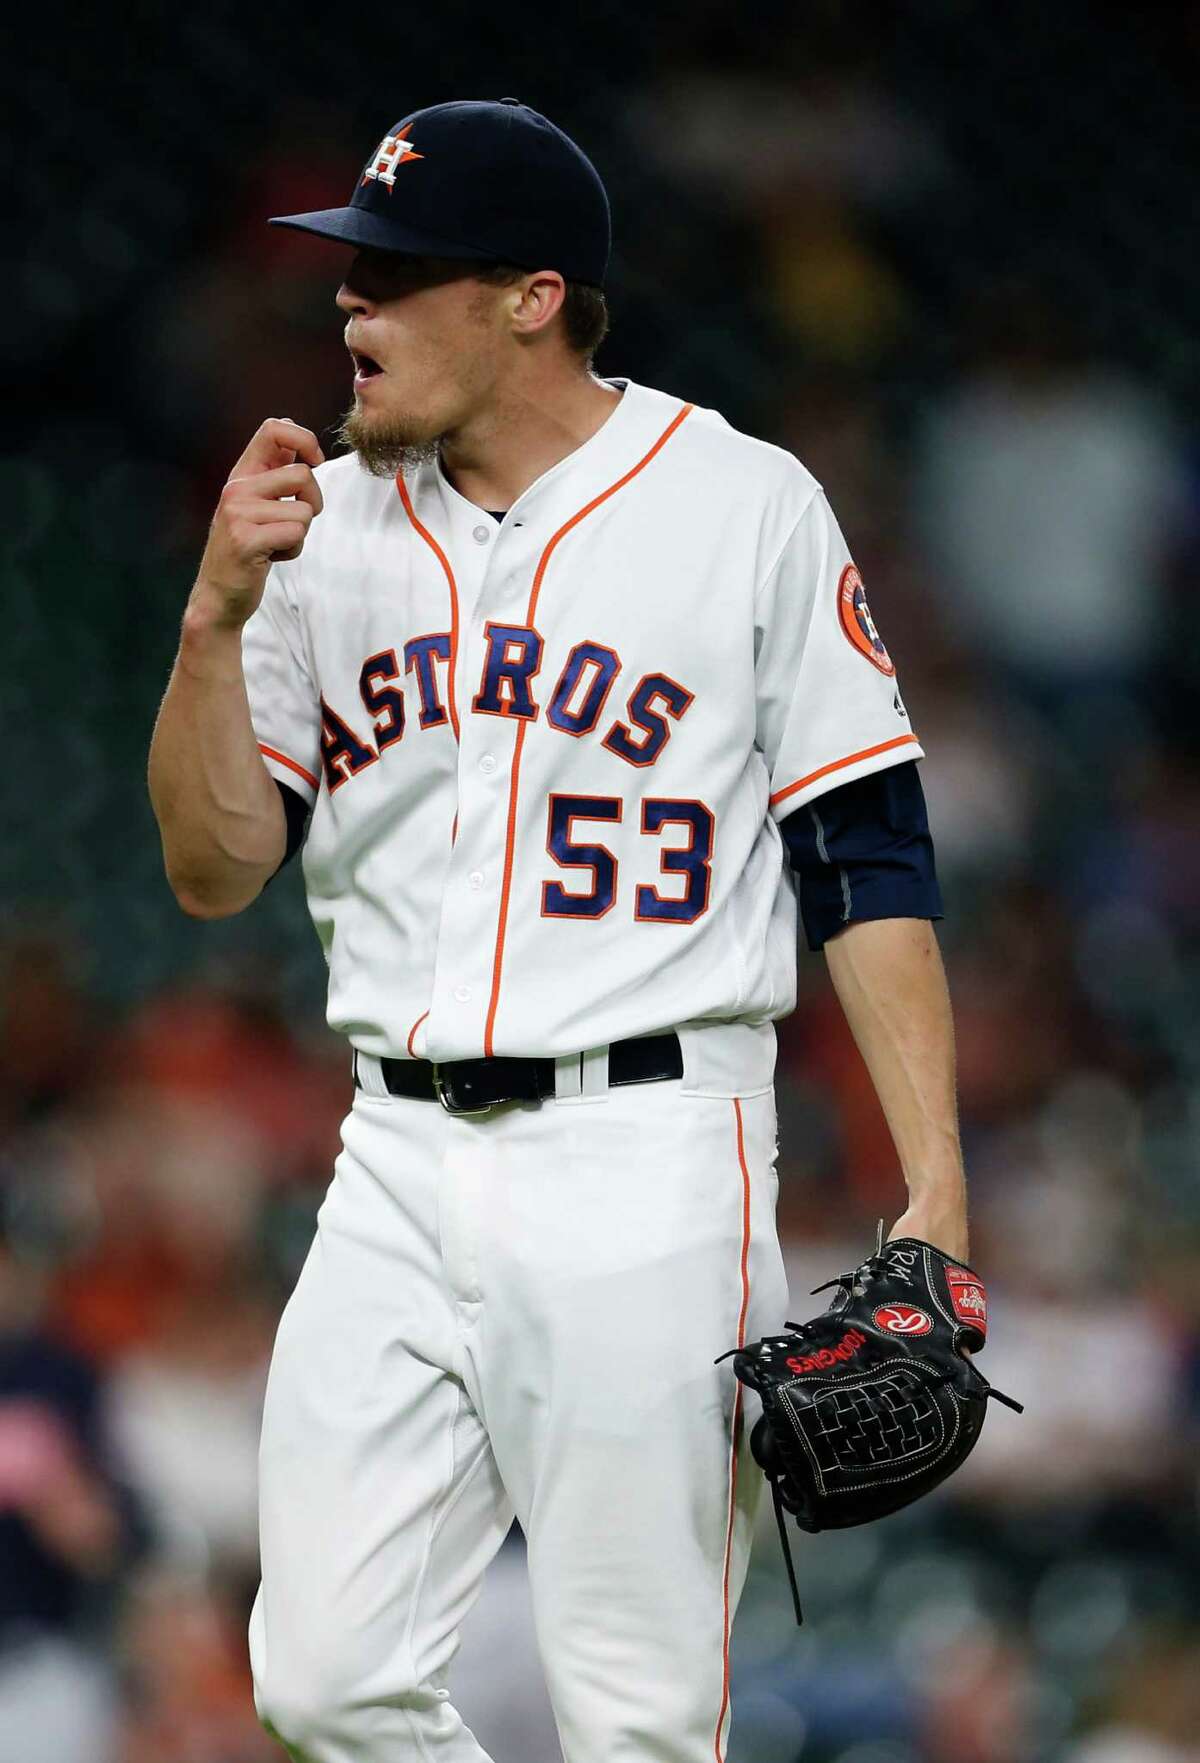 100+] Houston Astros Pictures